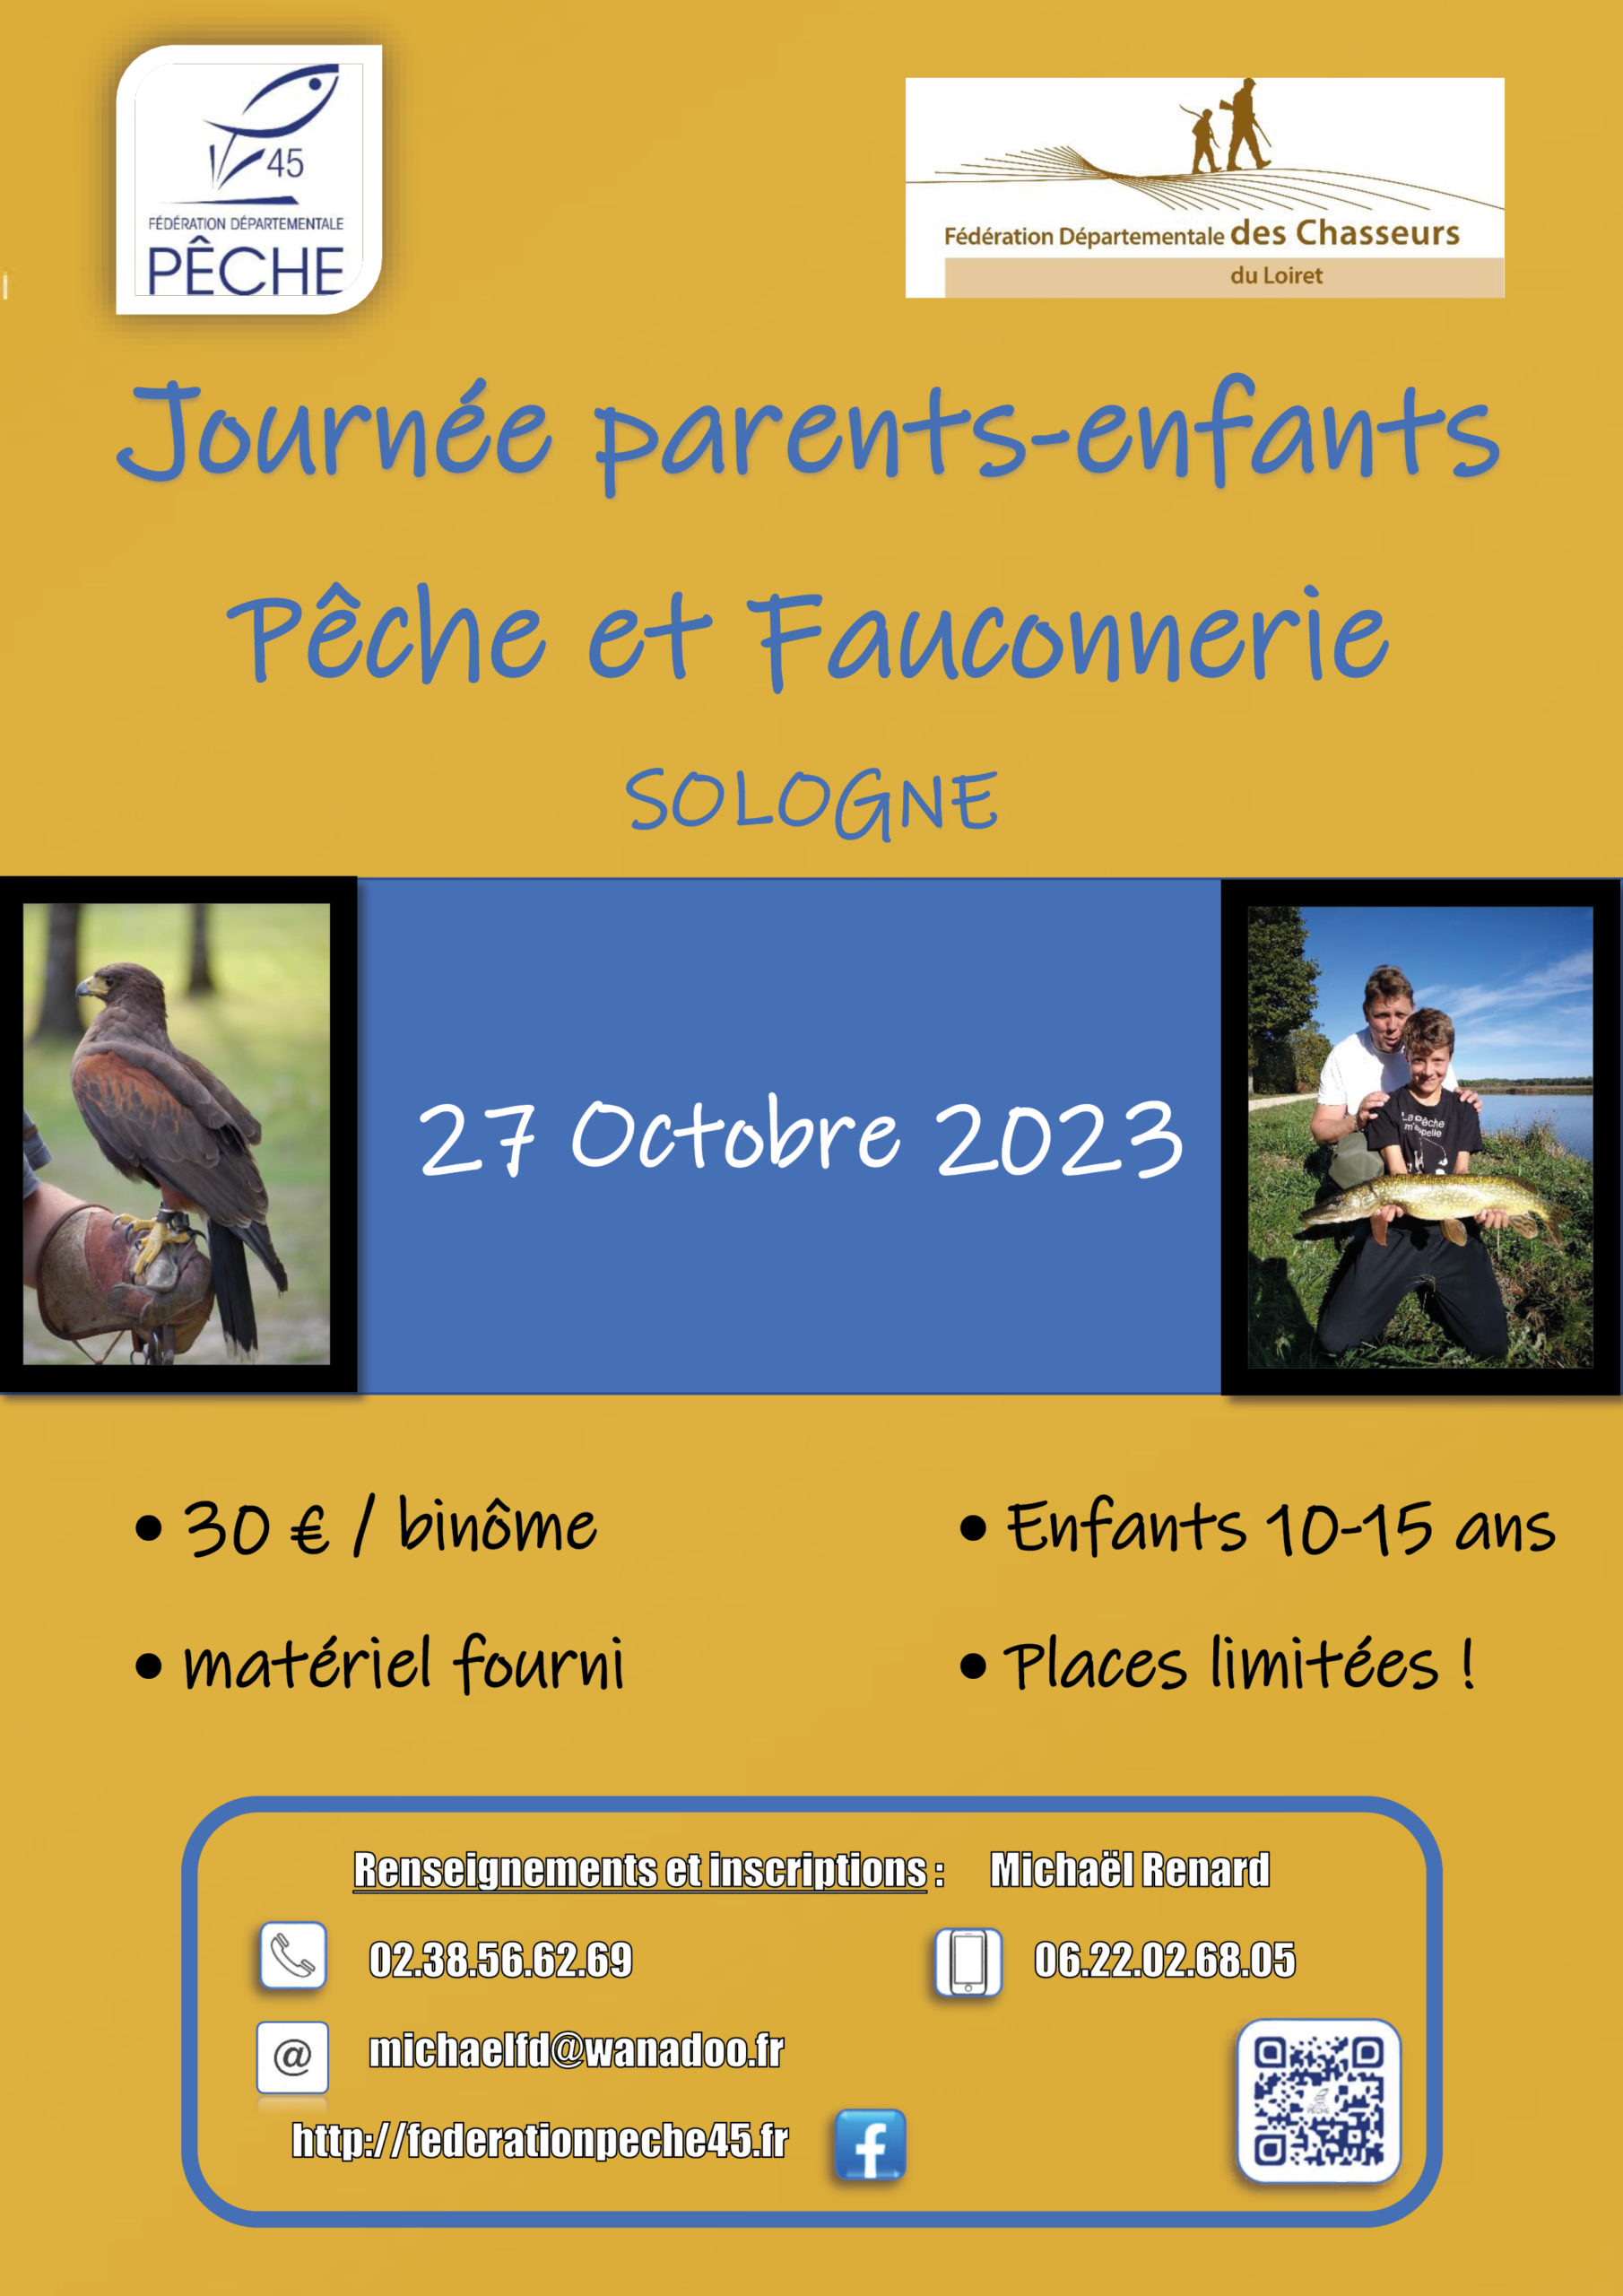 Journée parents-enfants pêche et Fauconnerie 27 Octobre 2023